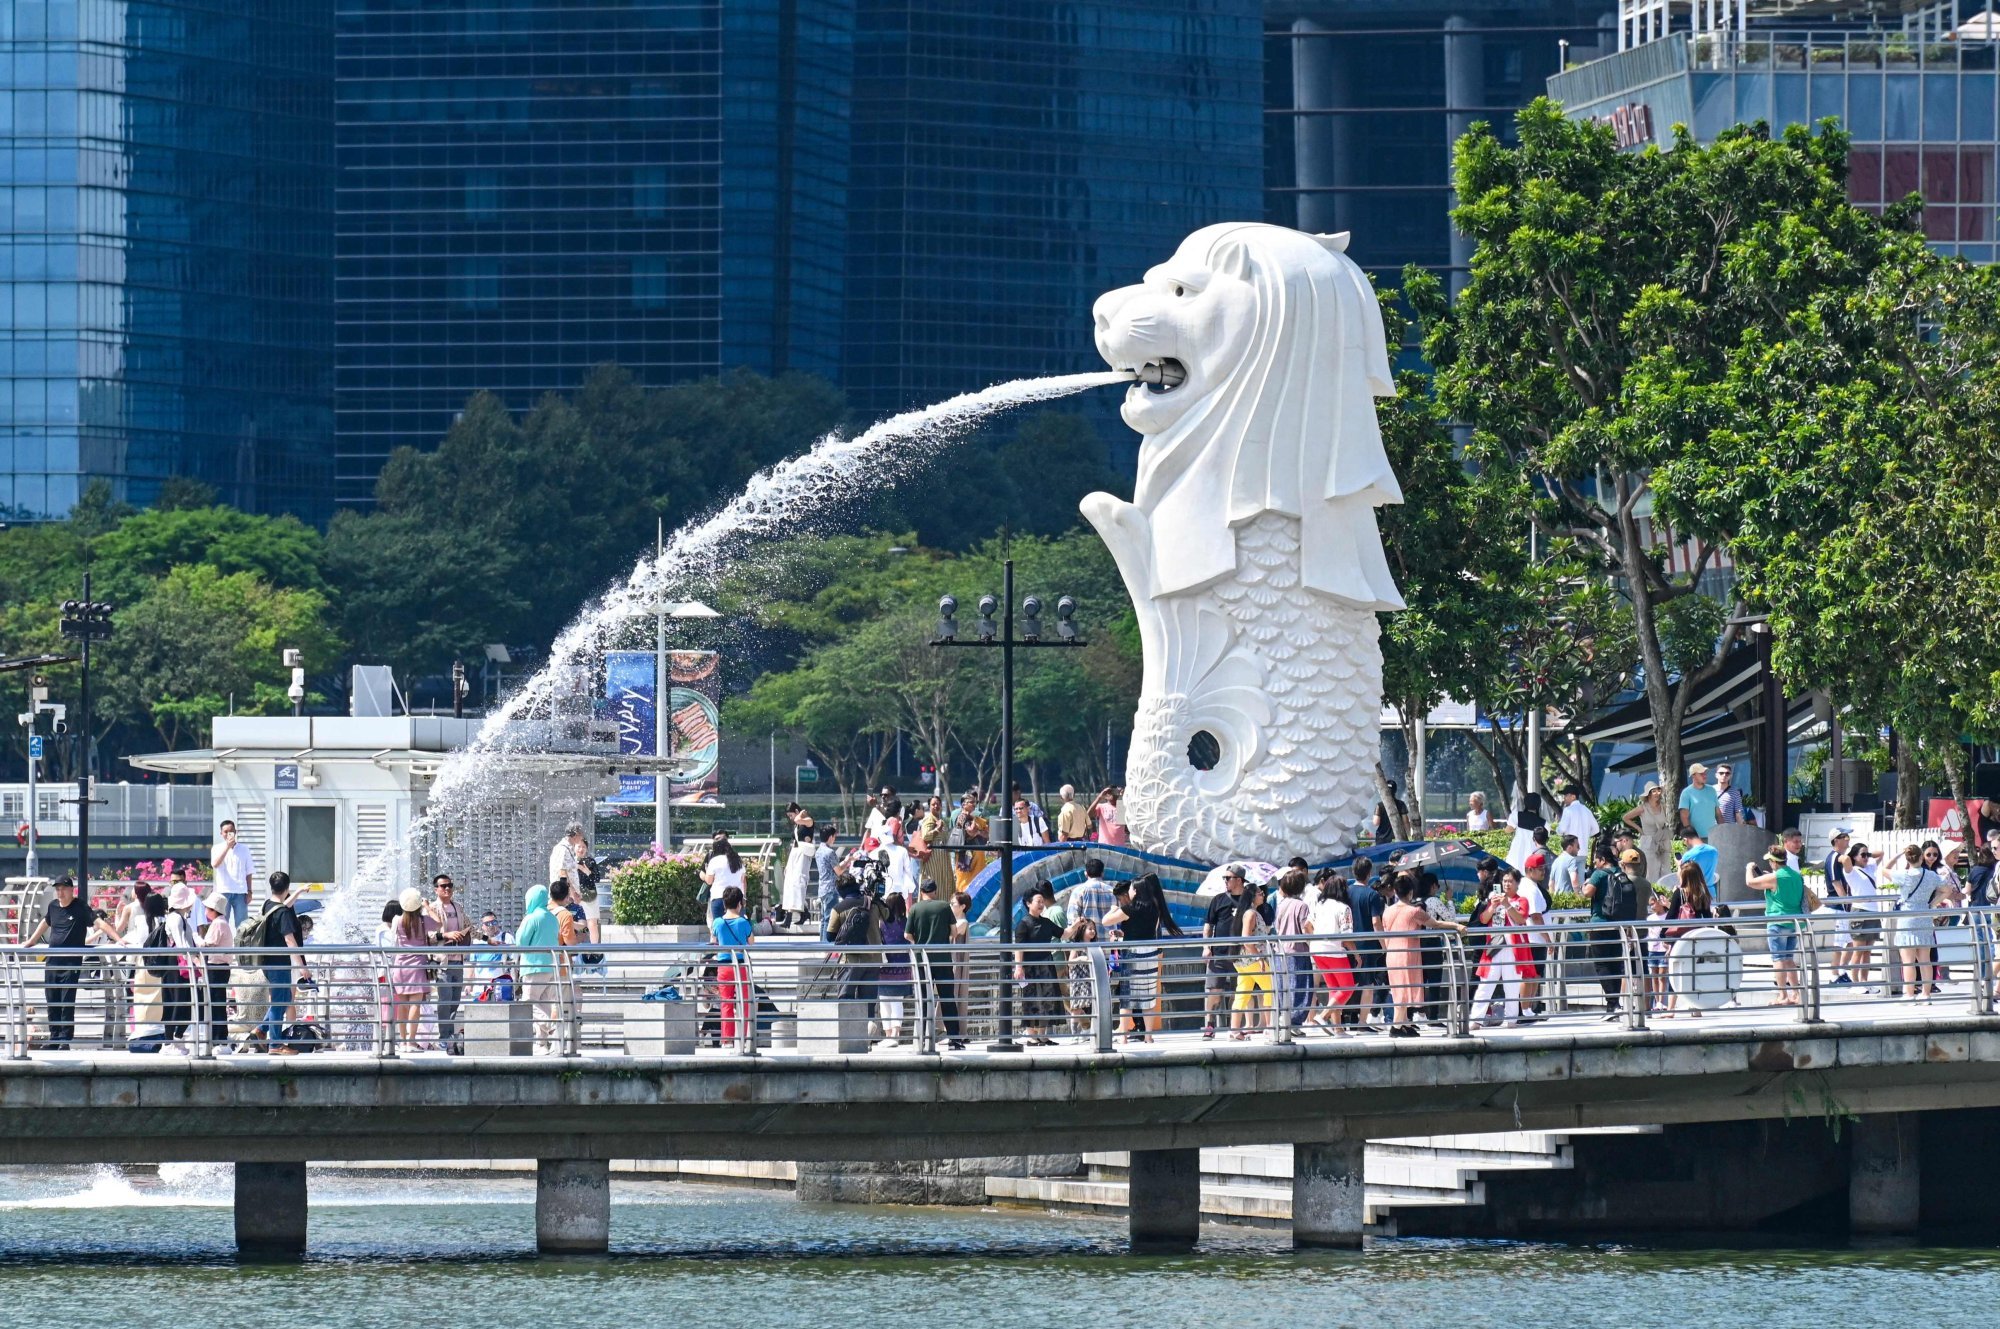 Singapur es un caso excepcional en materia de armonía racial, pero ¿es sostenible su enfoque?